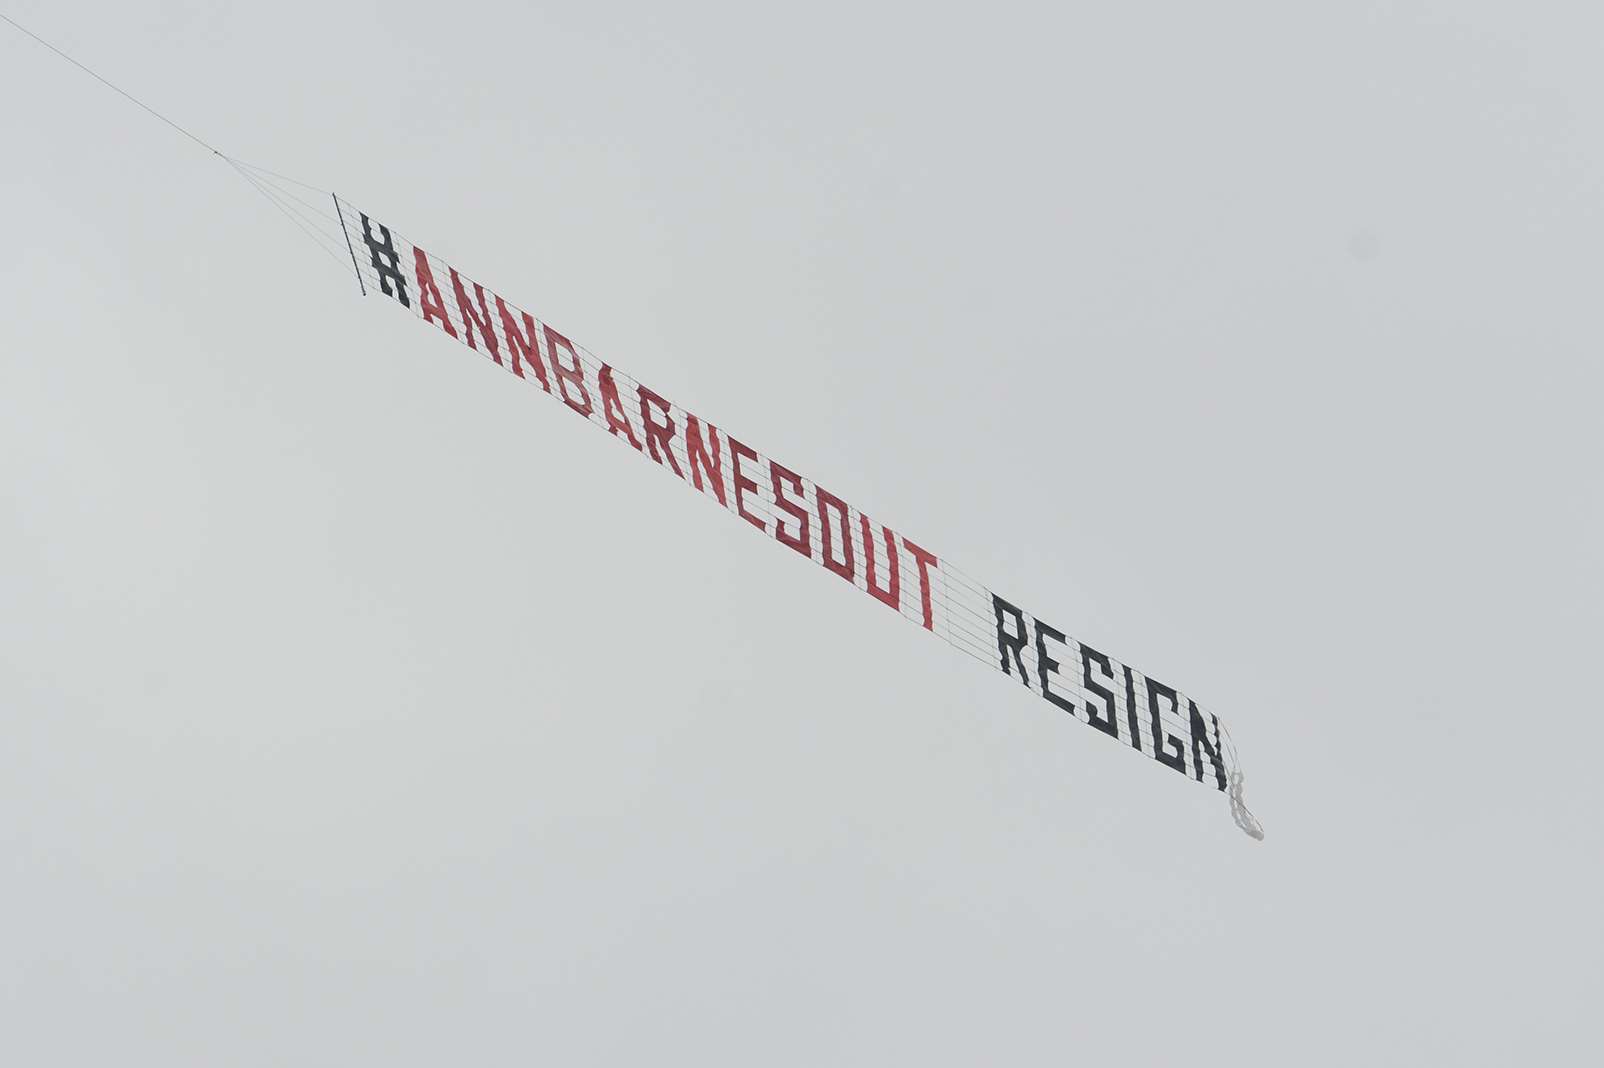 The #AnnBarnesout aerial banner over Maidstone. Picture: Simon Burchett